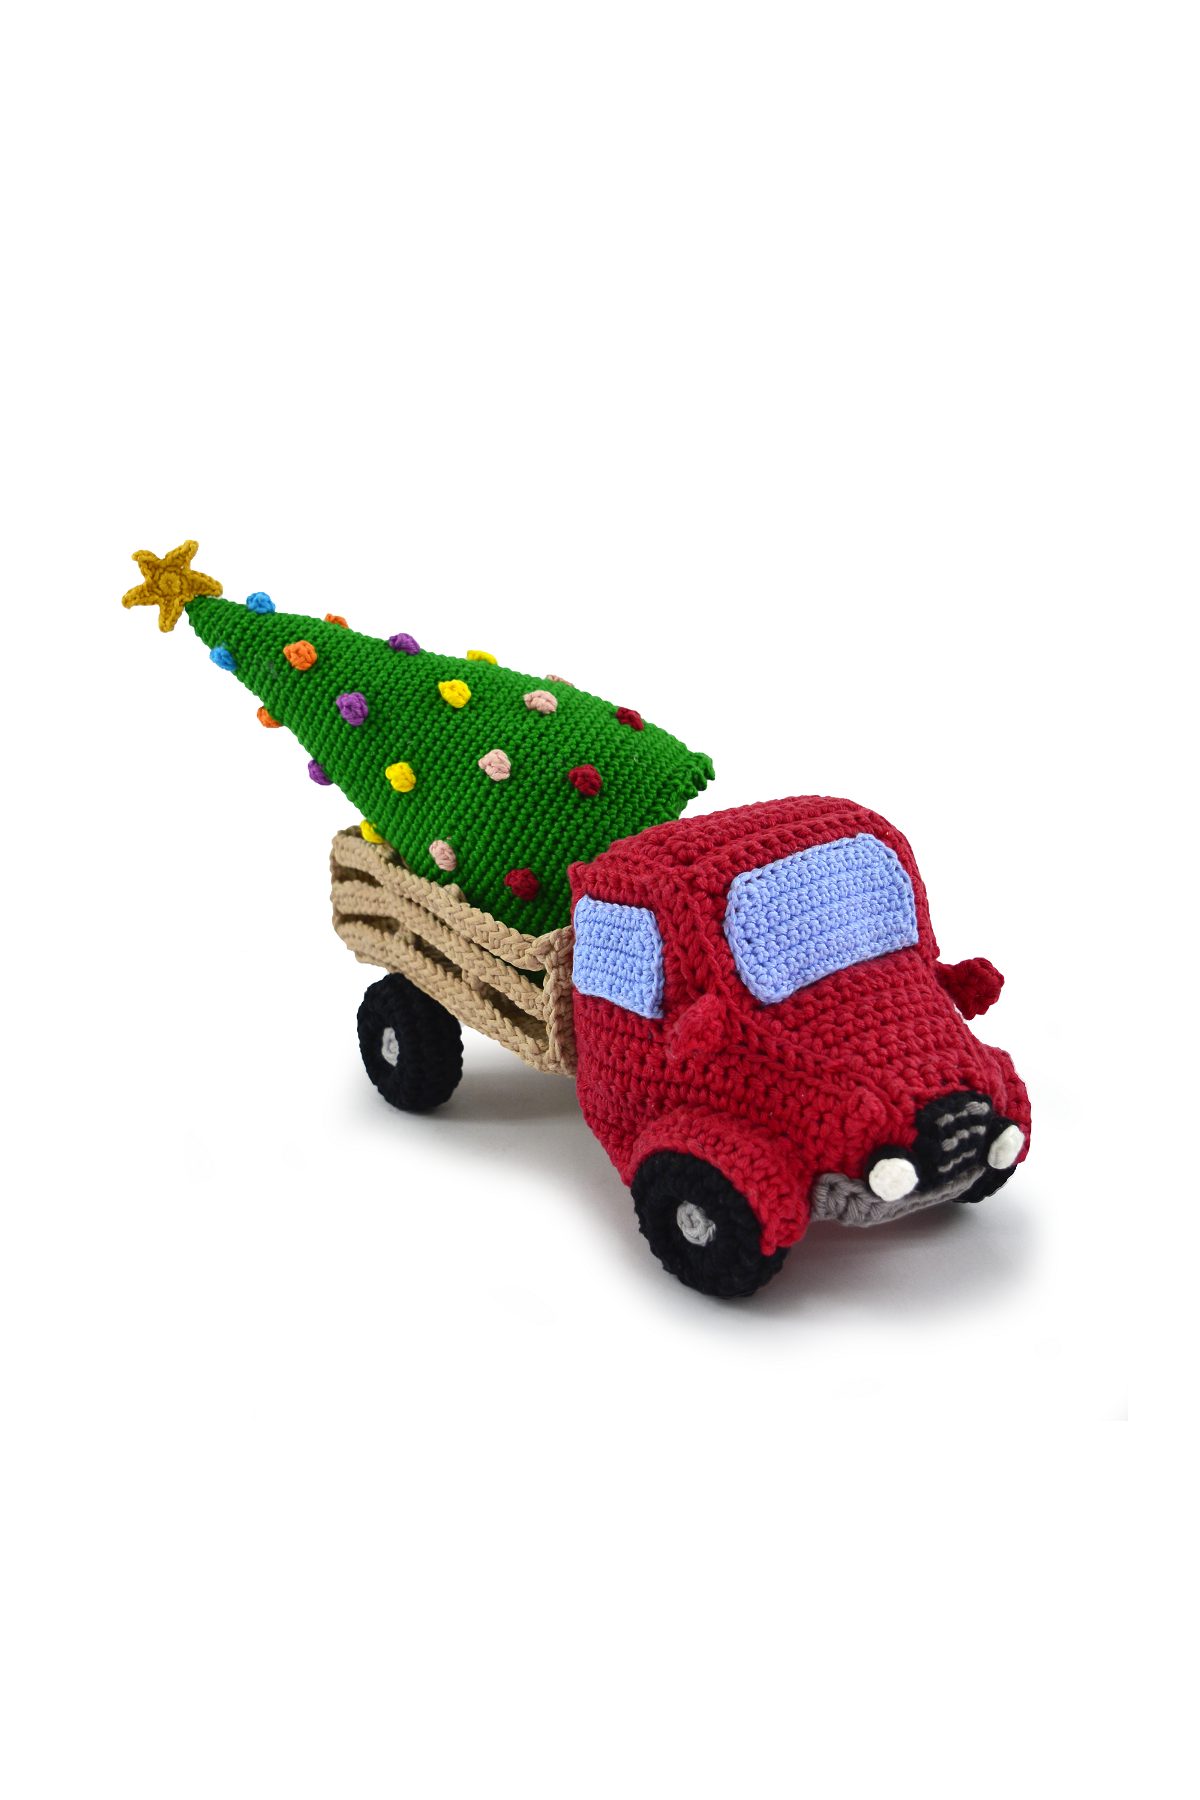 Um caminhão de brinquedo rosa com um pneu preto.